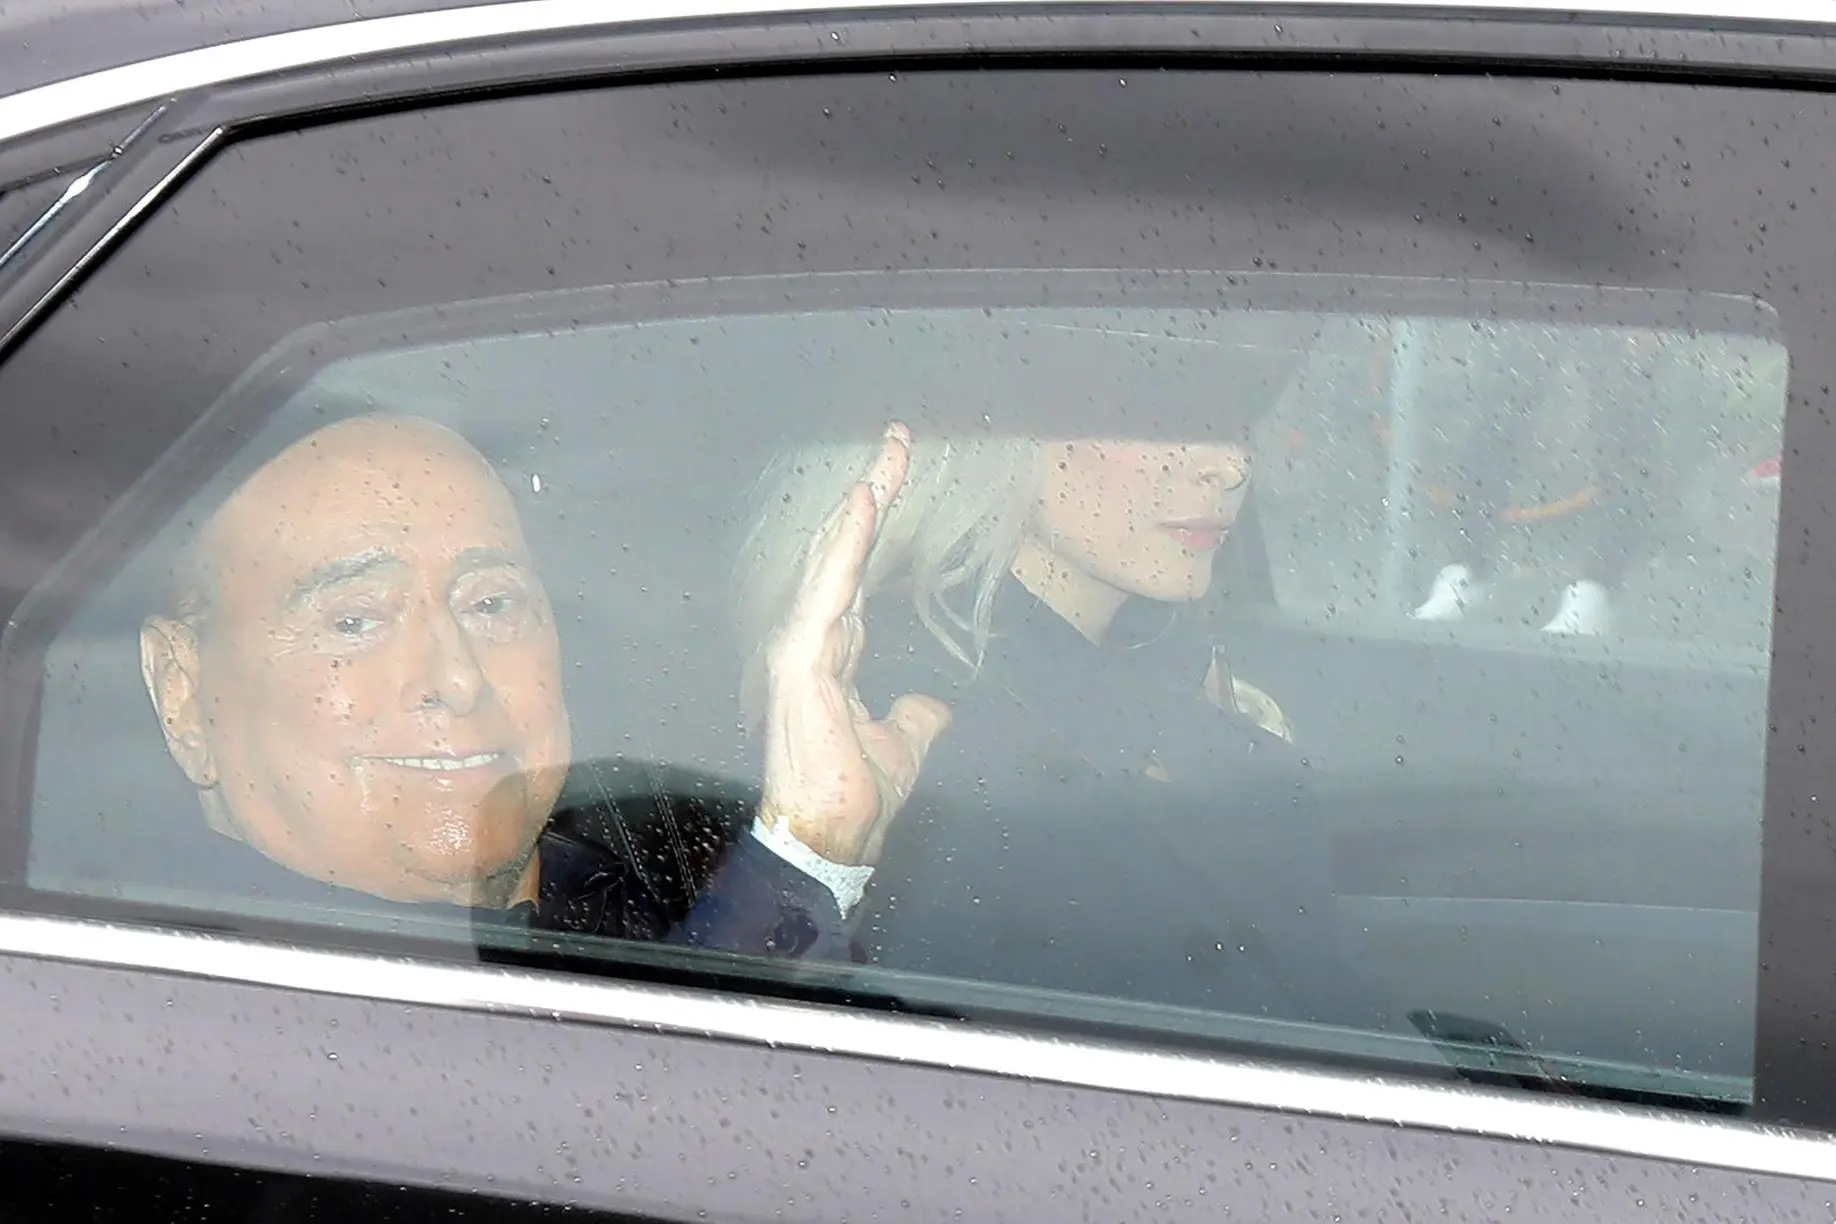 Silvio Berlusconi leaves San Raffaele hospital after a 45-day of hospitalization, Milan, 19 May 2023. ANSA / MATTEO BAZZI